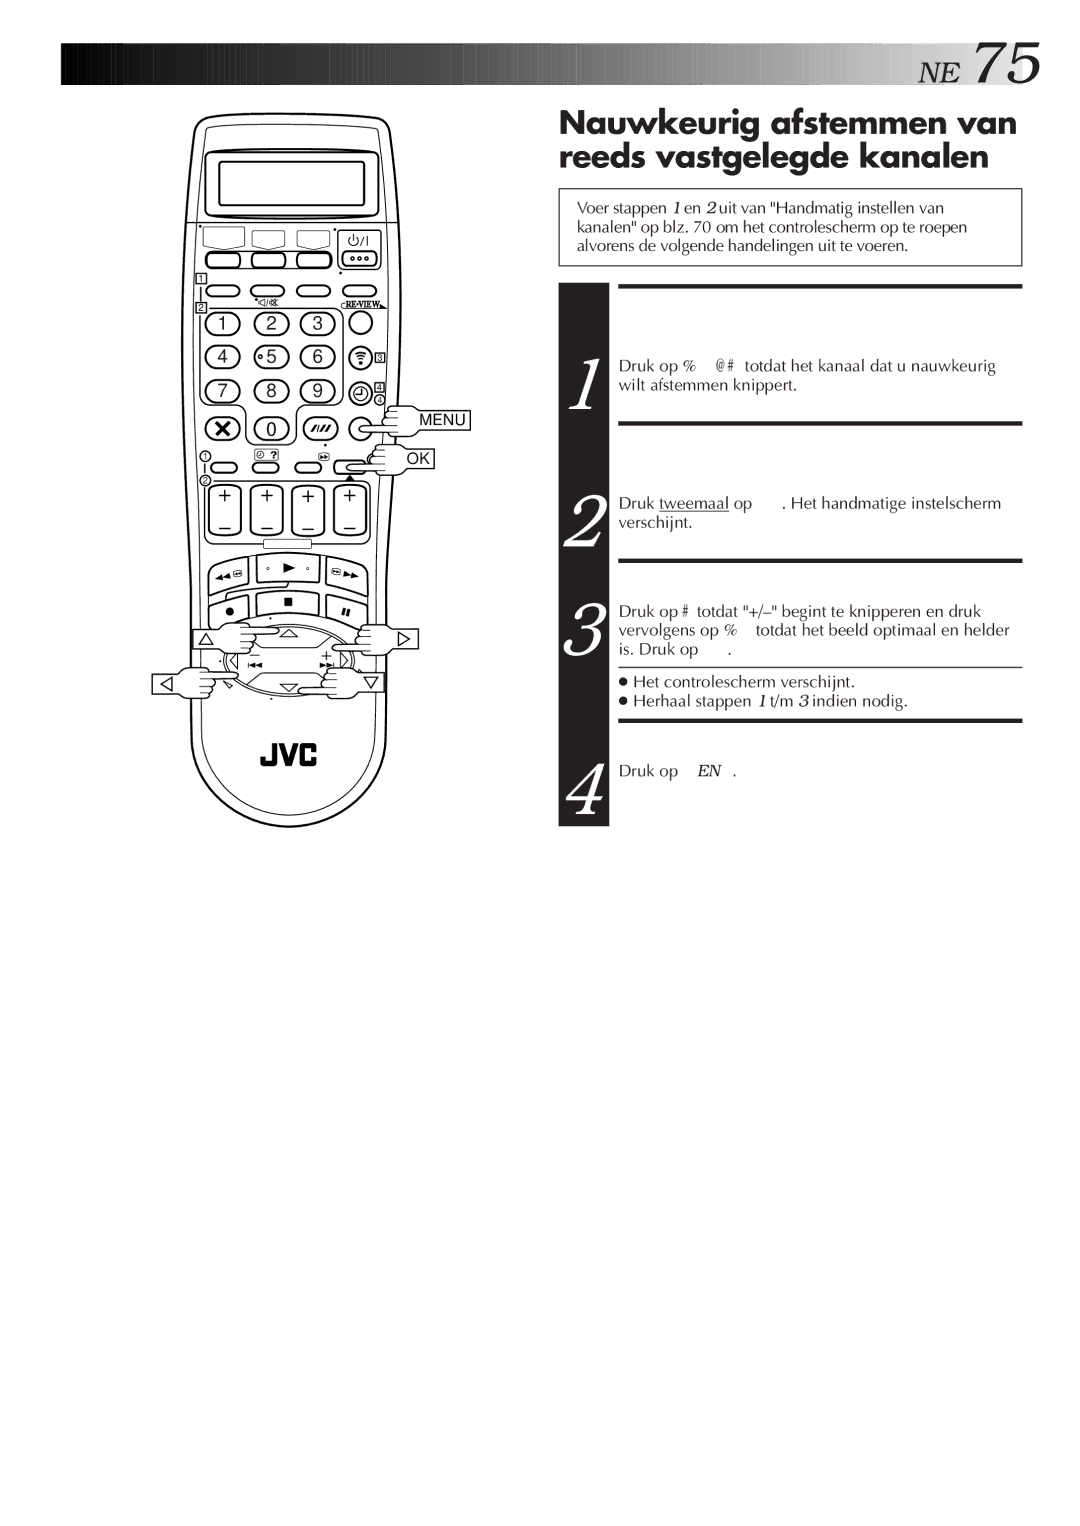 JVC HR-DVS2EU manual Nauwkeurig afstemmen van reeds vastgelegde kanalen, Kies HET Nauwkeurig AF TE, Stemmen Kanaal 